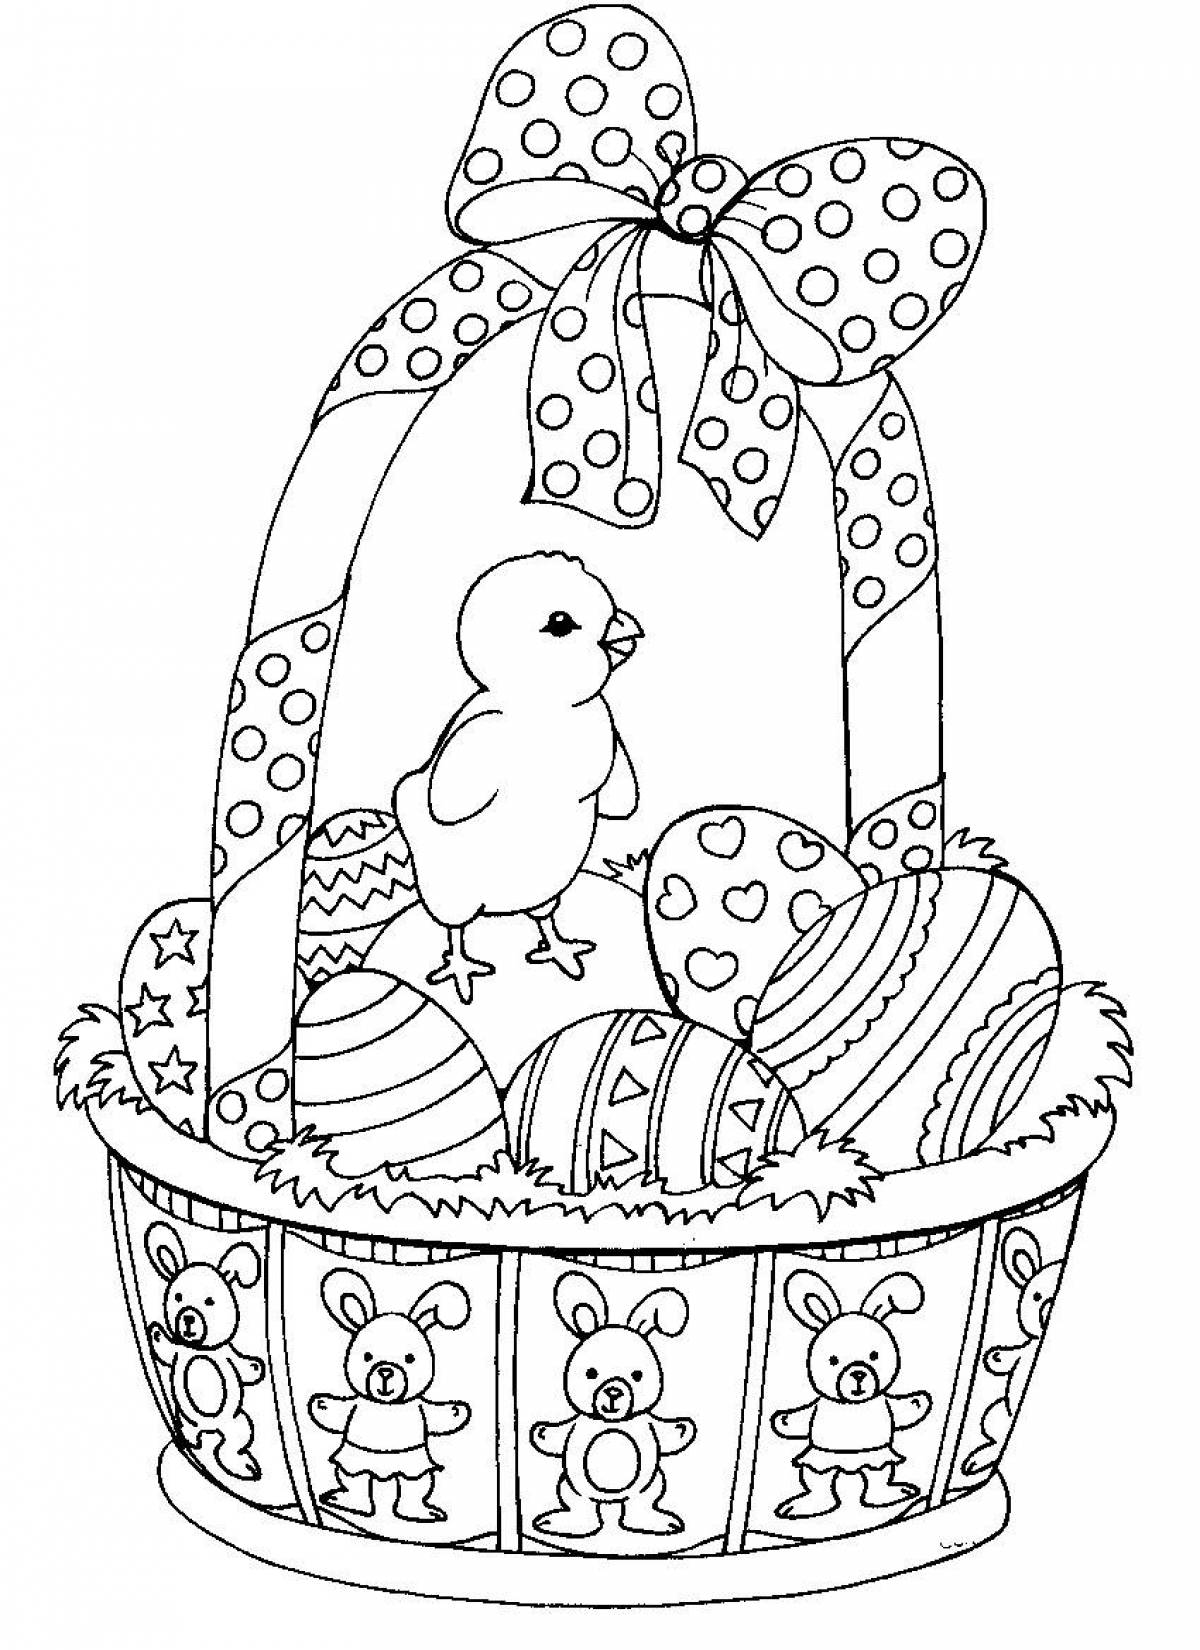 Chicken in a basket